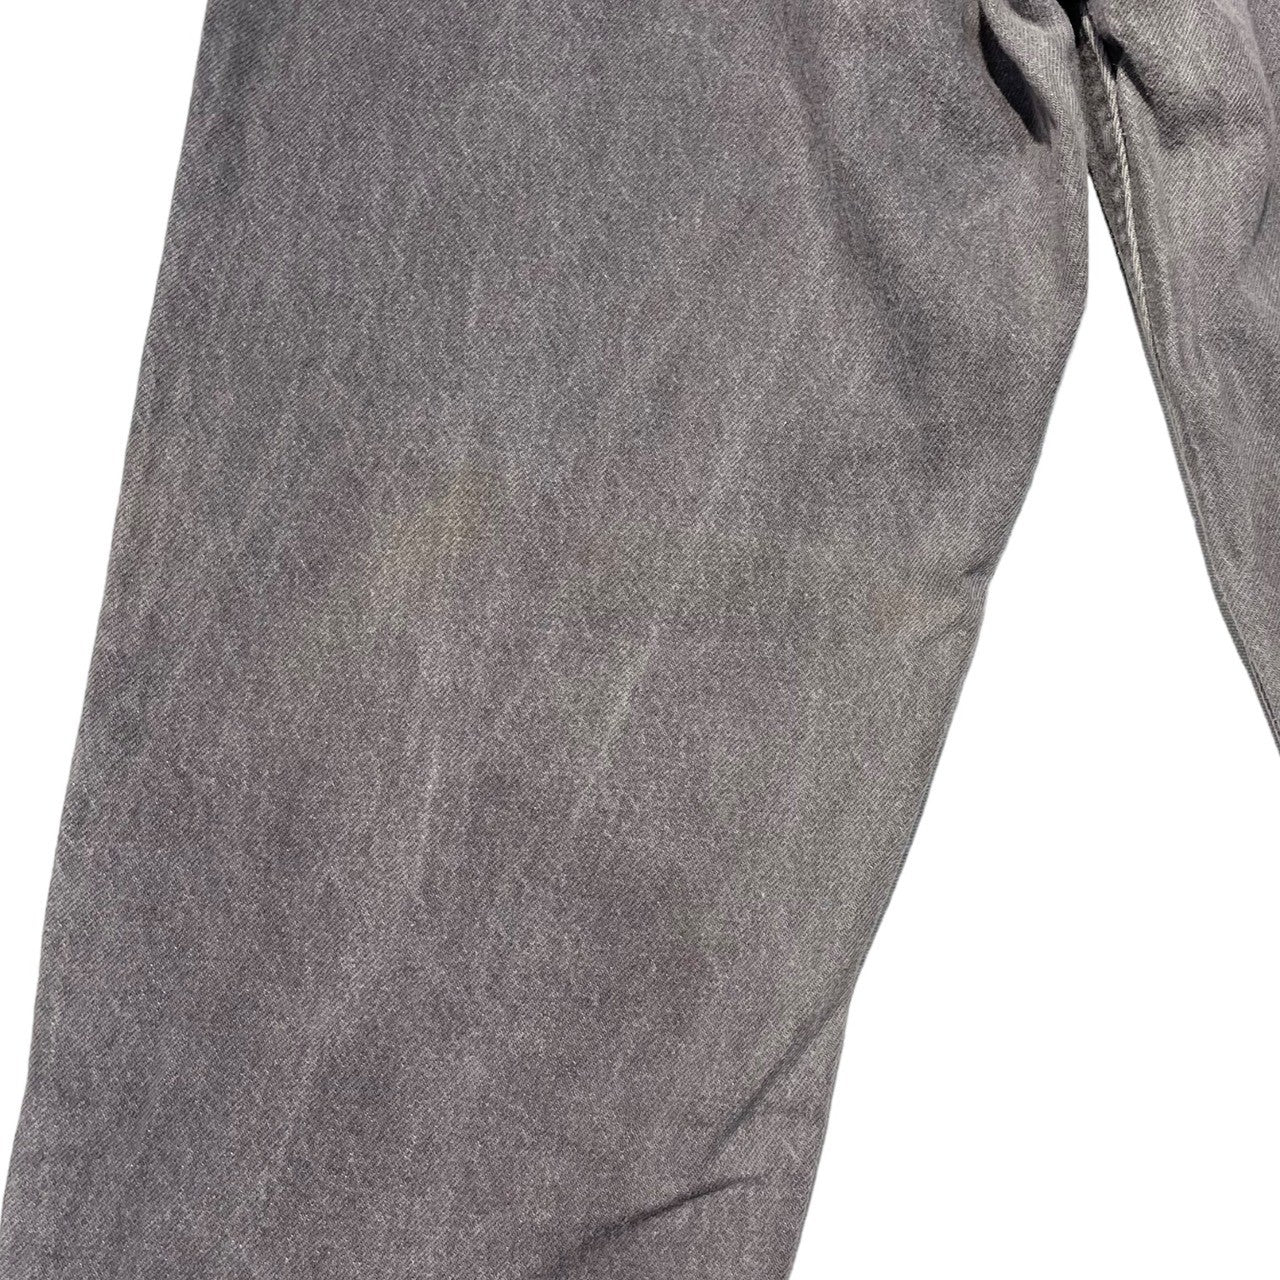 Levi's(リーバイス) 90’s 550  tapered denim pants テーパード デニム パンツ W38 L32 グレー 90年代 585 先染め オレンジタブ ヴィンテージ